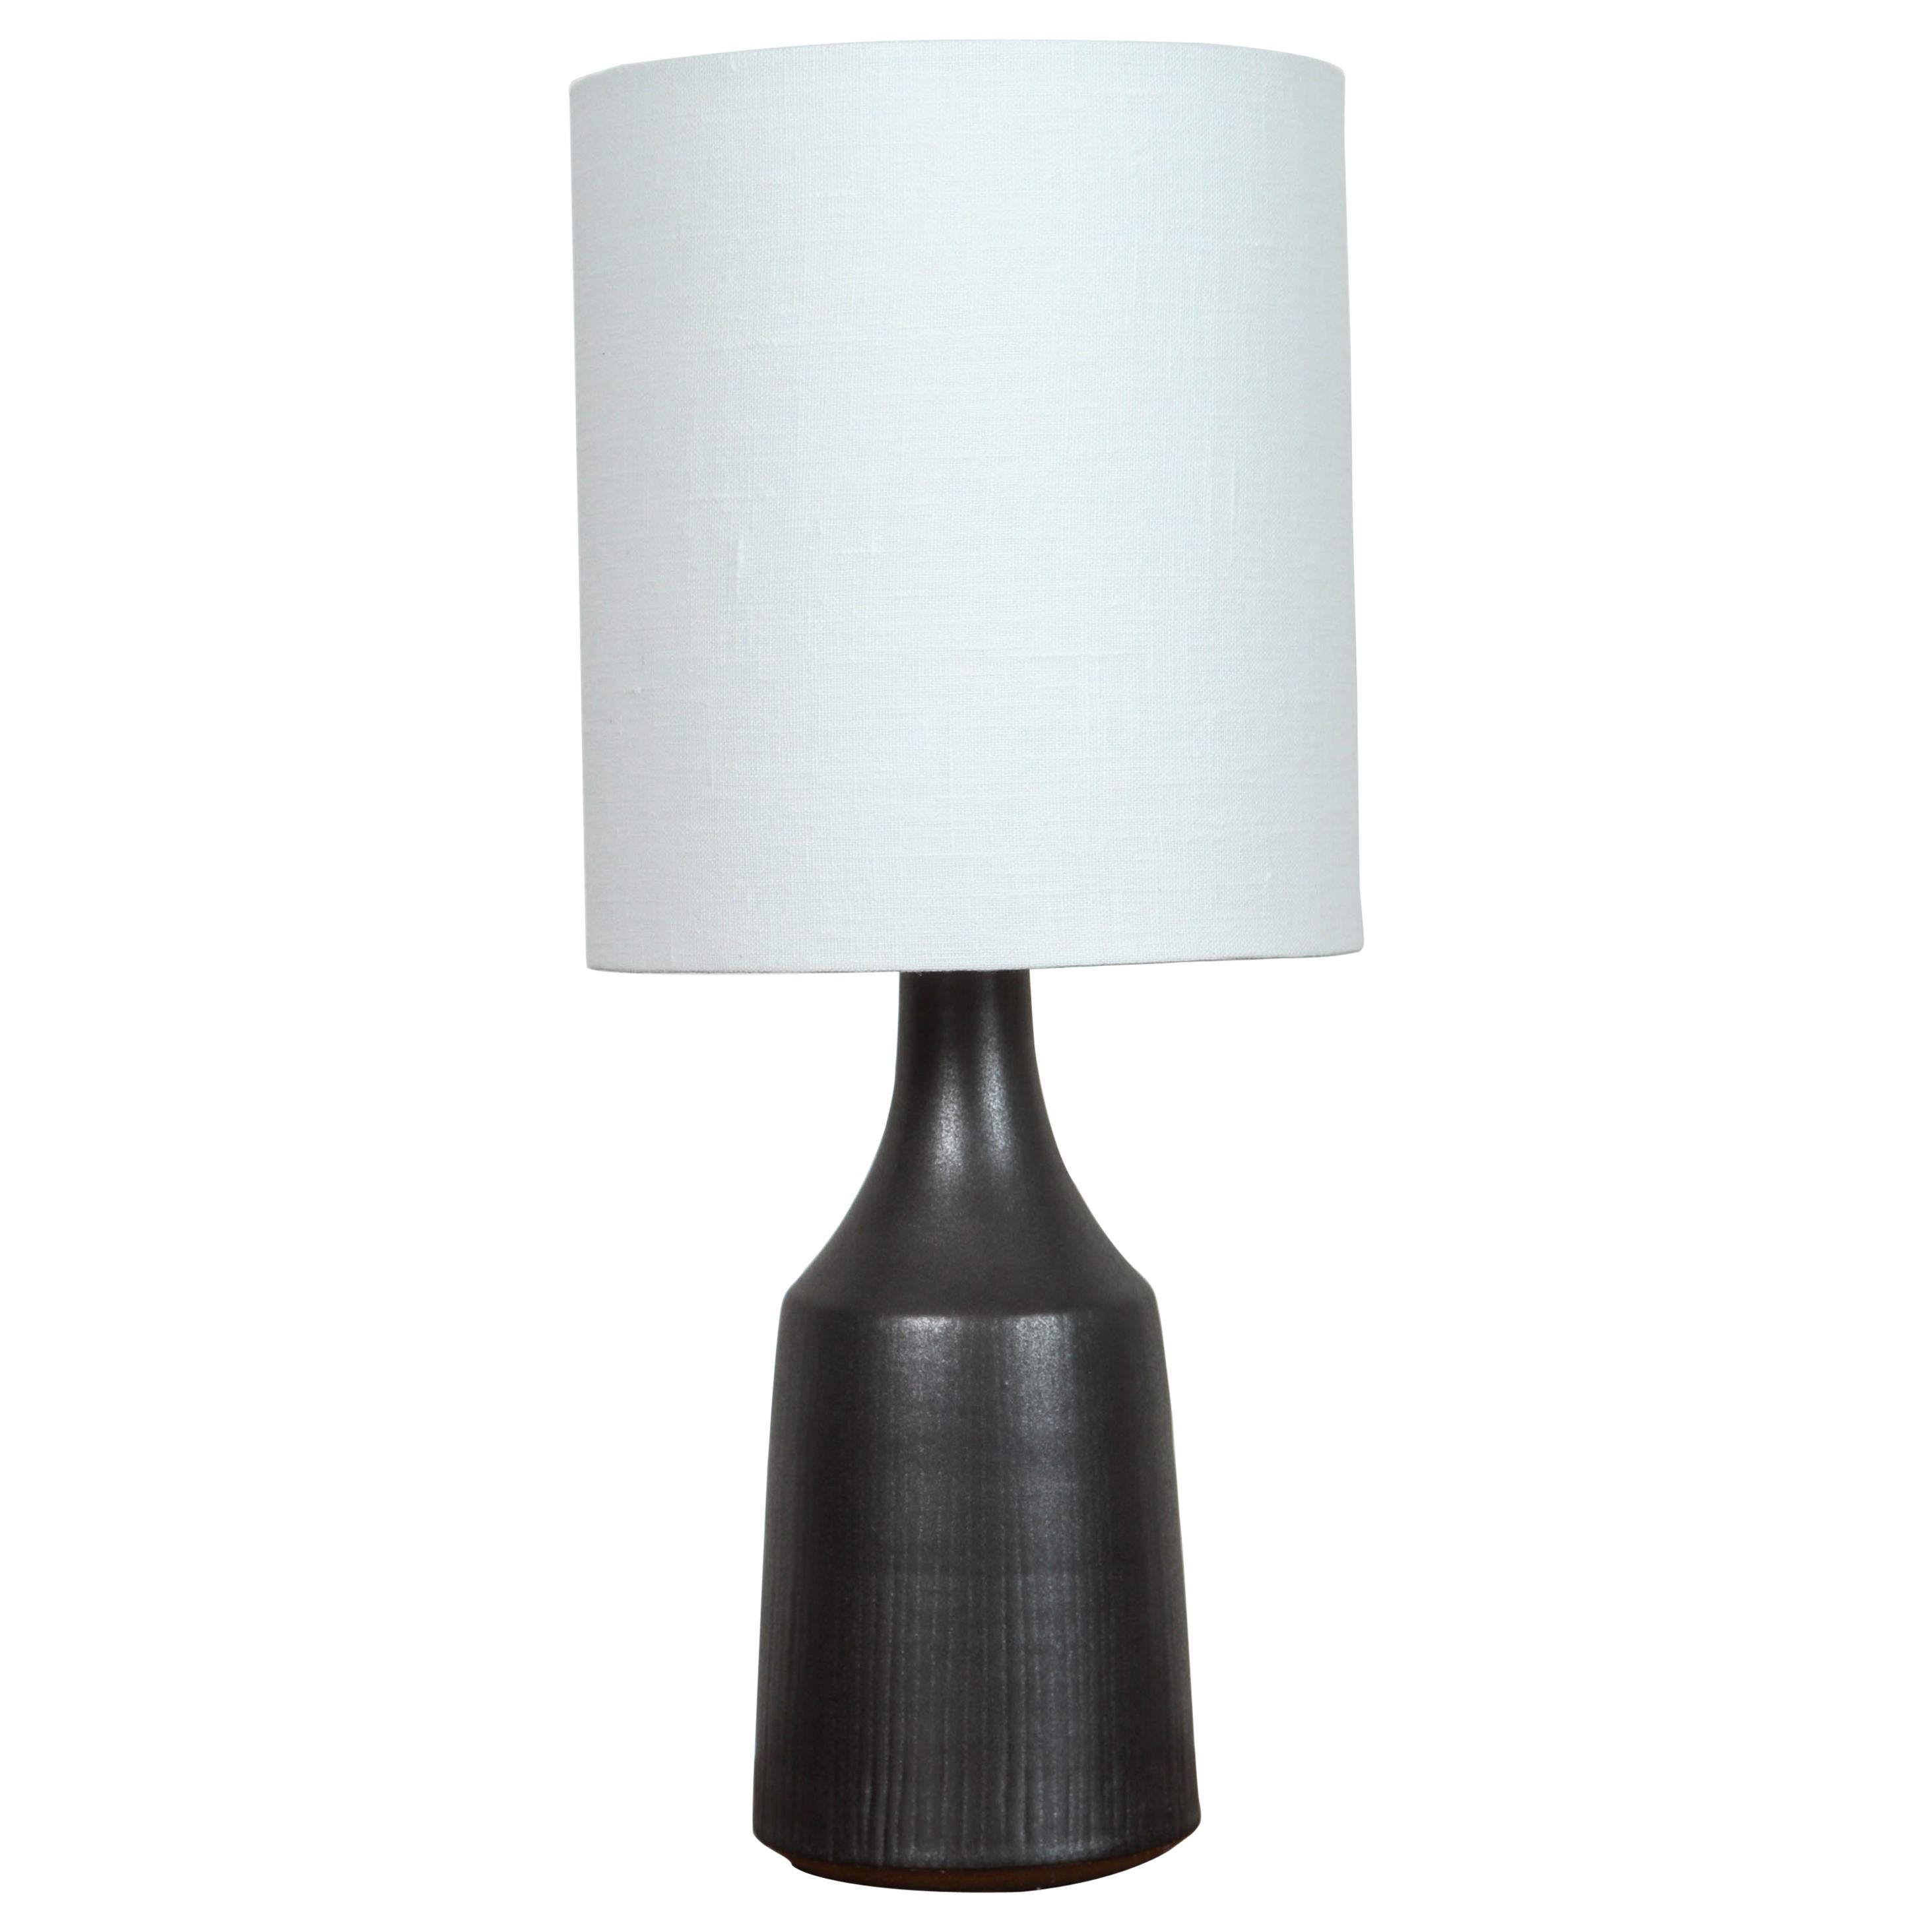 „Klassische“ Lampe von Victoria Morris für Lawson-Fenning